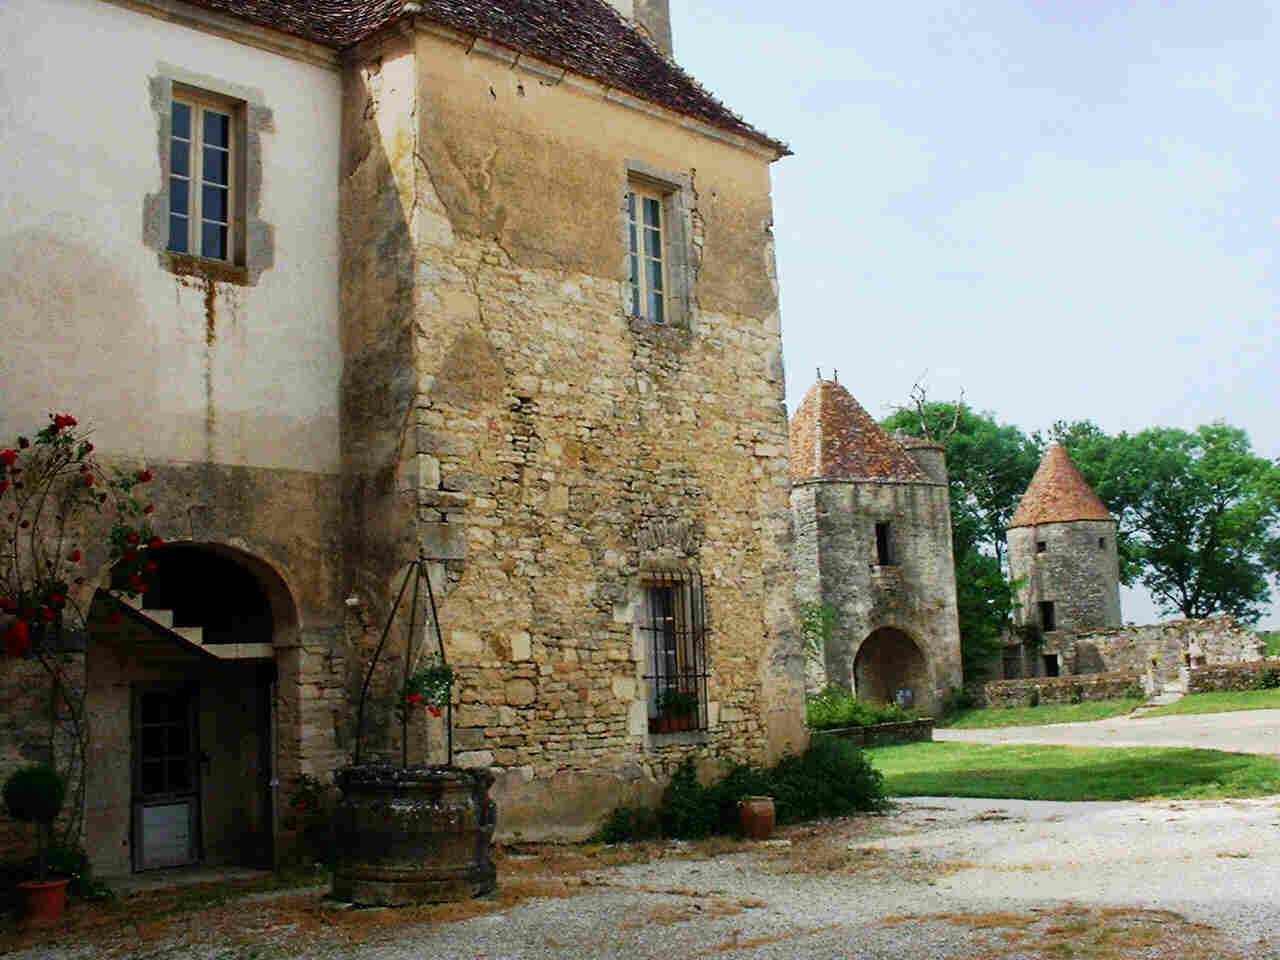 Chateau de Rosieres